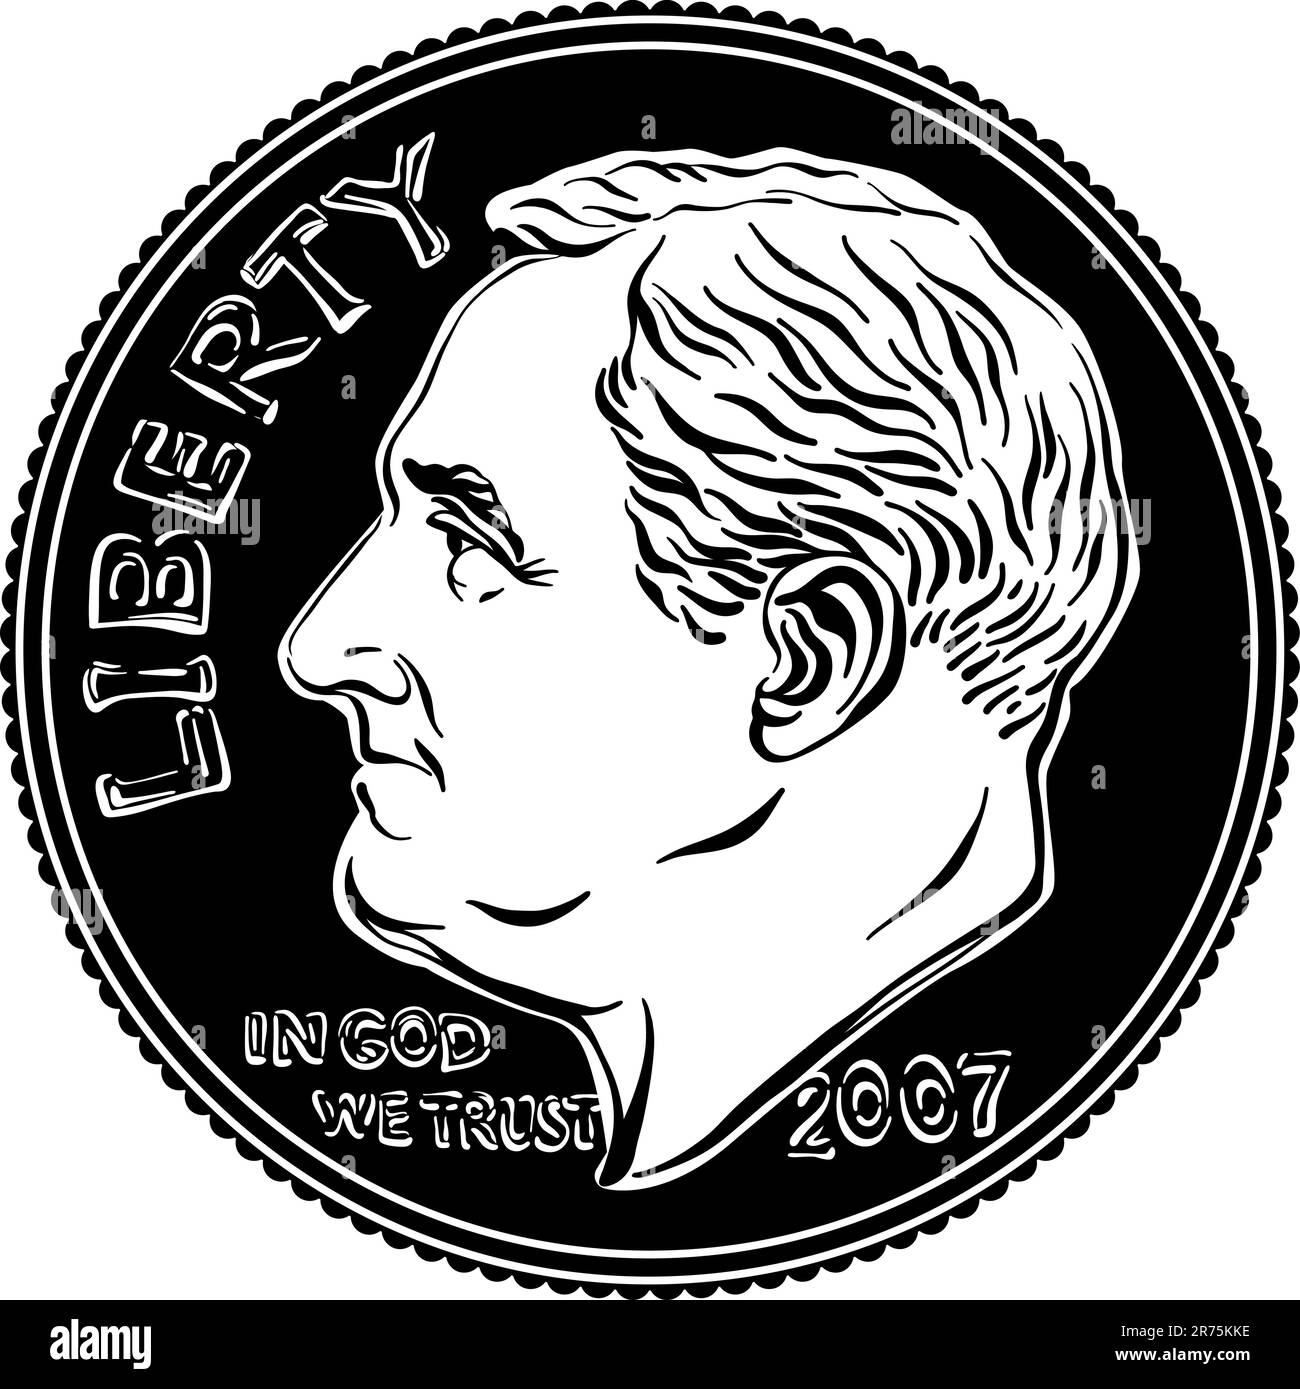 Amerikanisches Geld Roosevelt Dime, Vereinigte Staaten ein Dime oder 10-Cent-Silbermünze mit Präsident Franklin D Roosevelt auf der Vorderseite. Schwarzweiß-Bild Stock Vektor